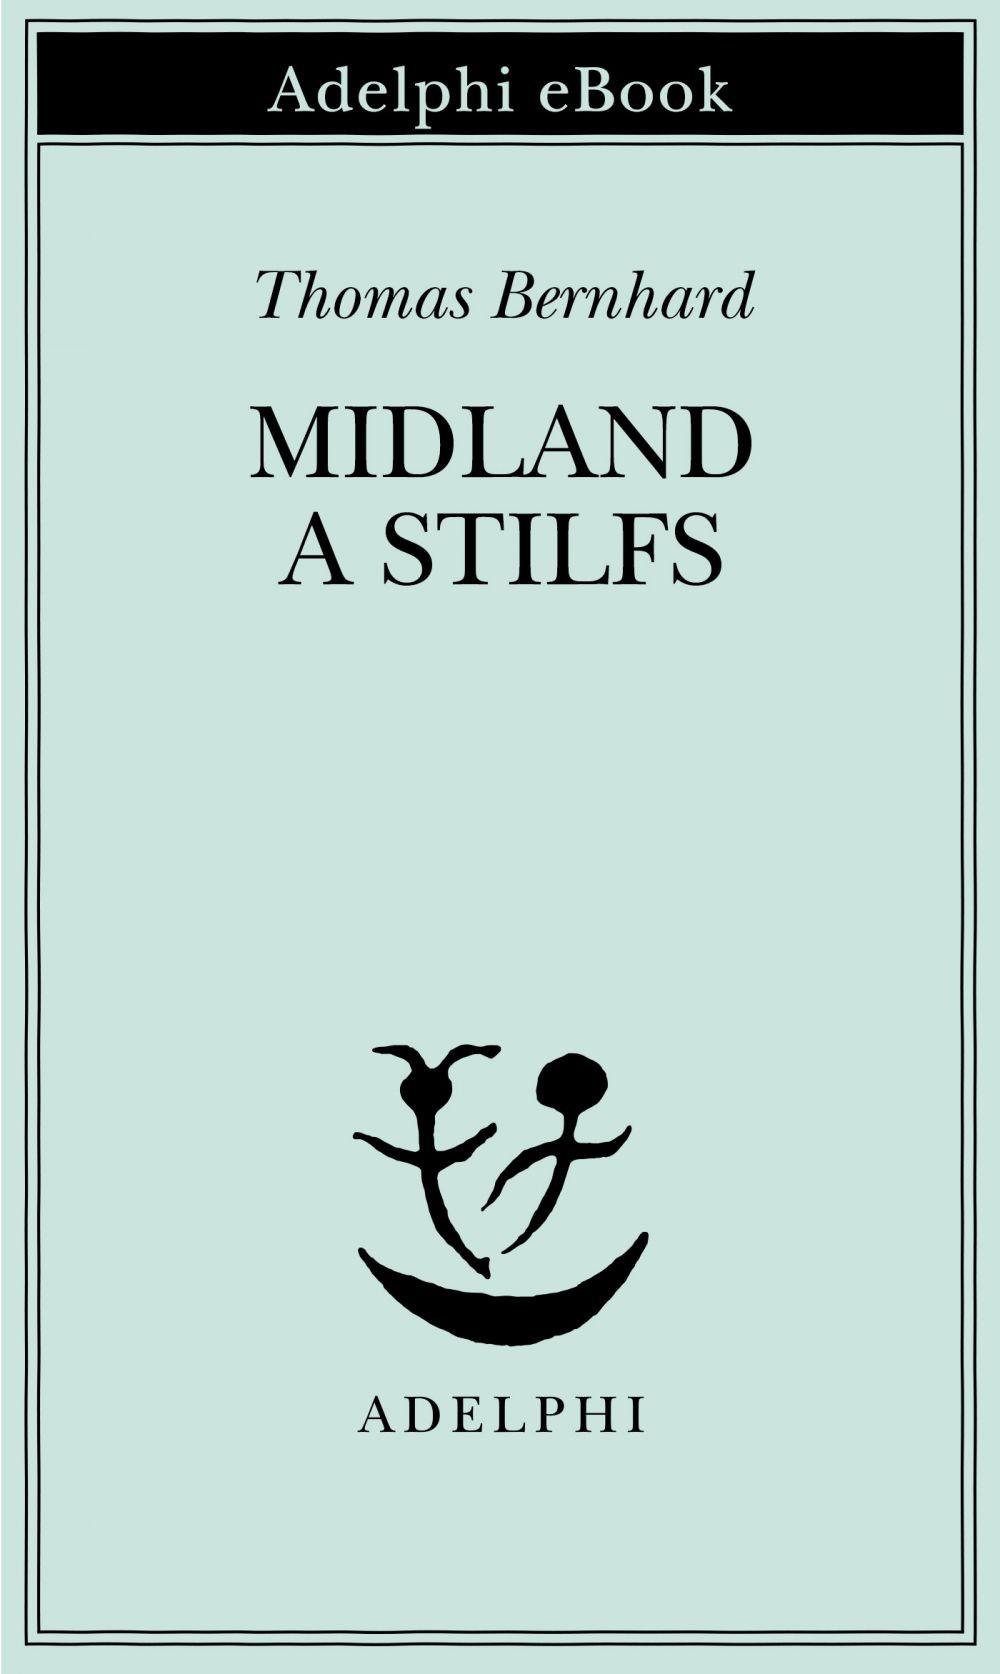 Midland a Stilfs - Librerie.coop